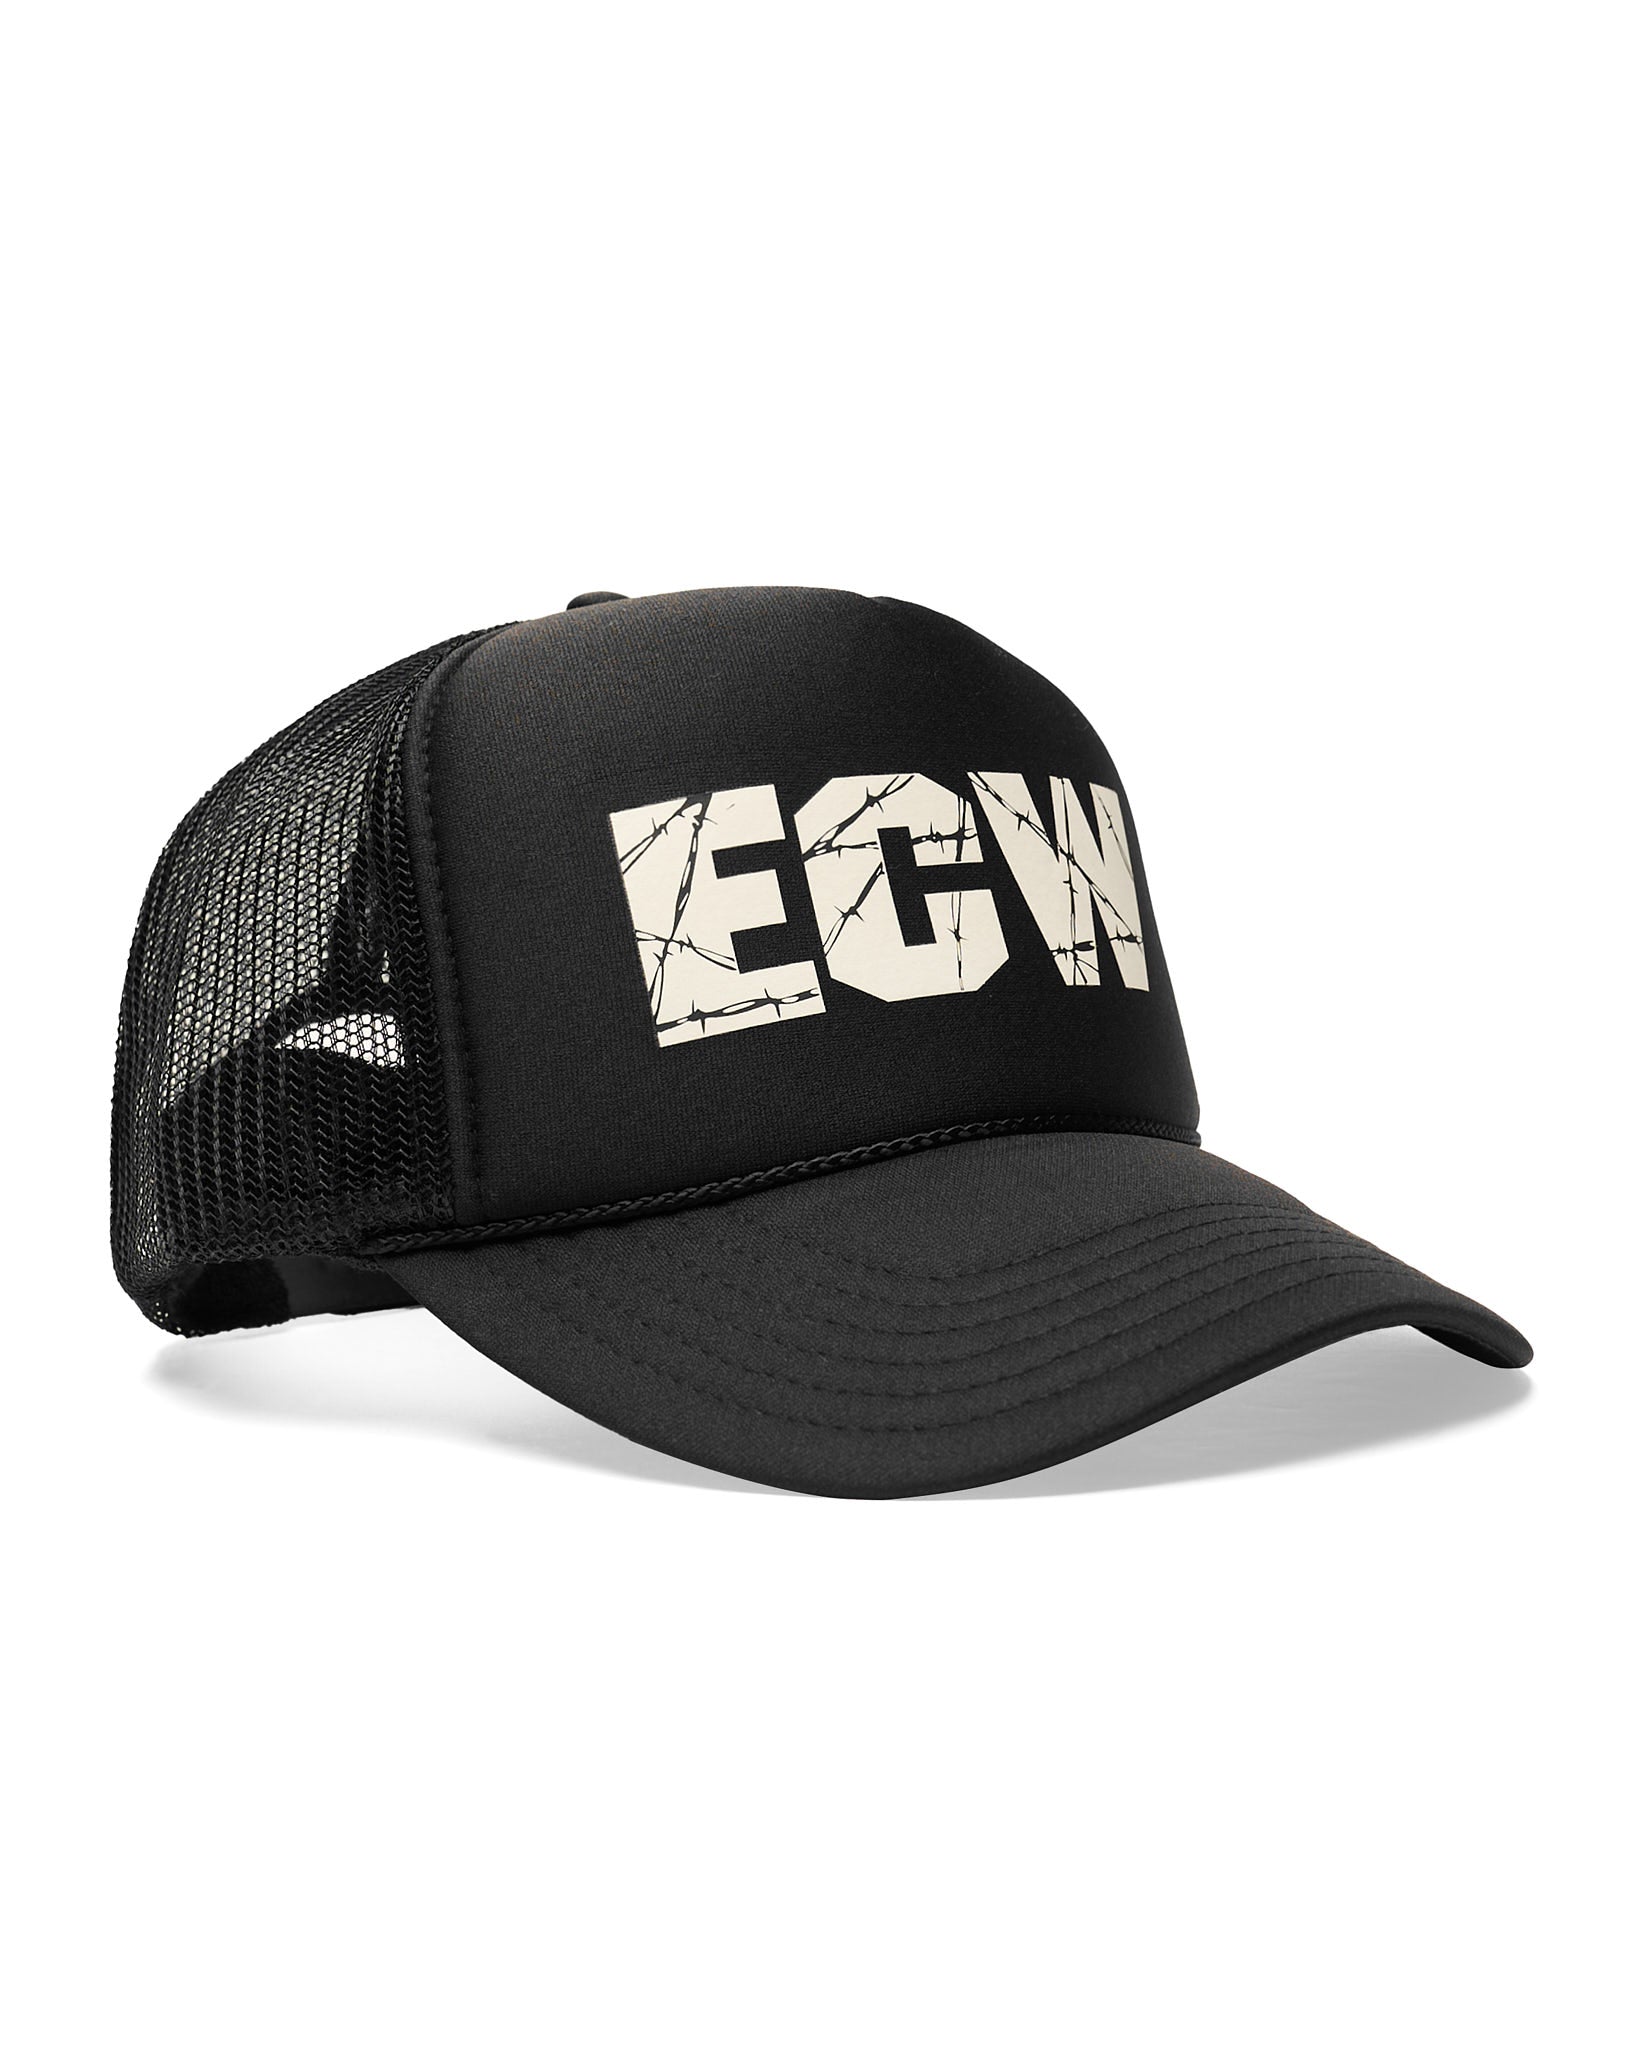 ECW Black Trucker Hat